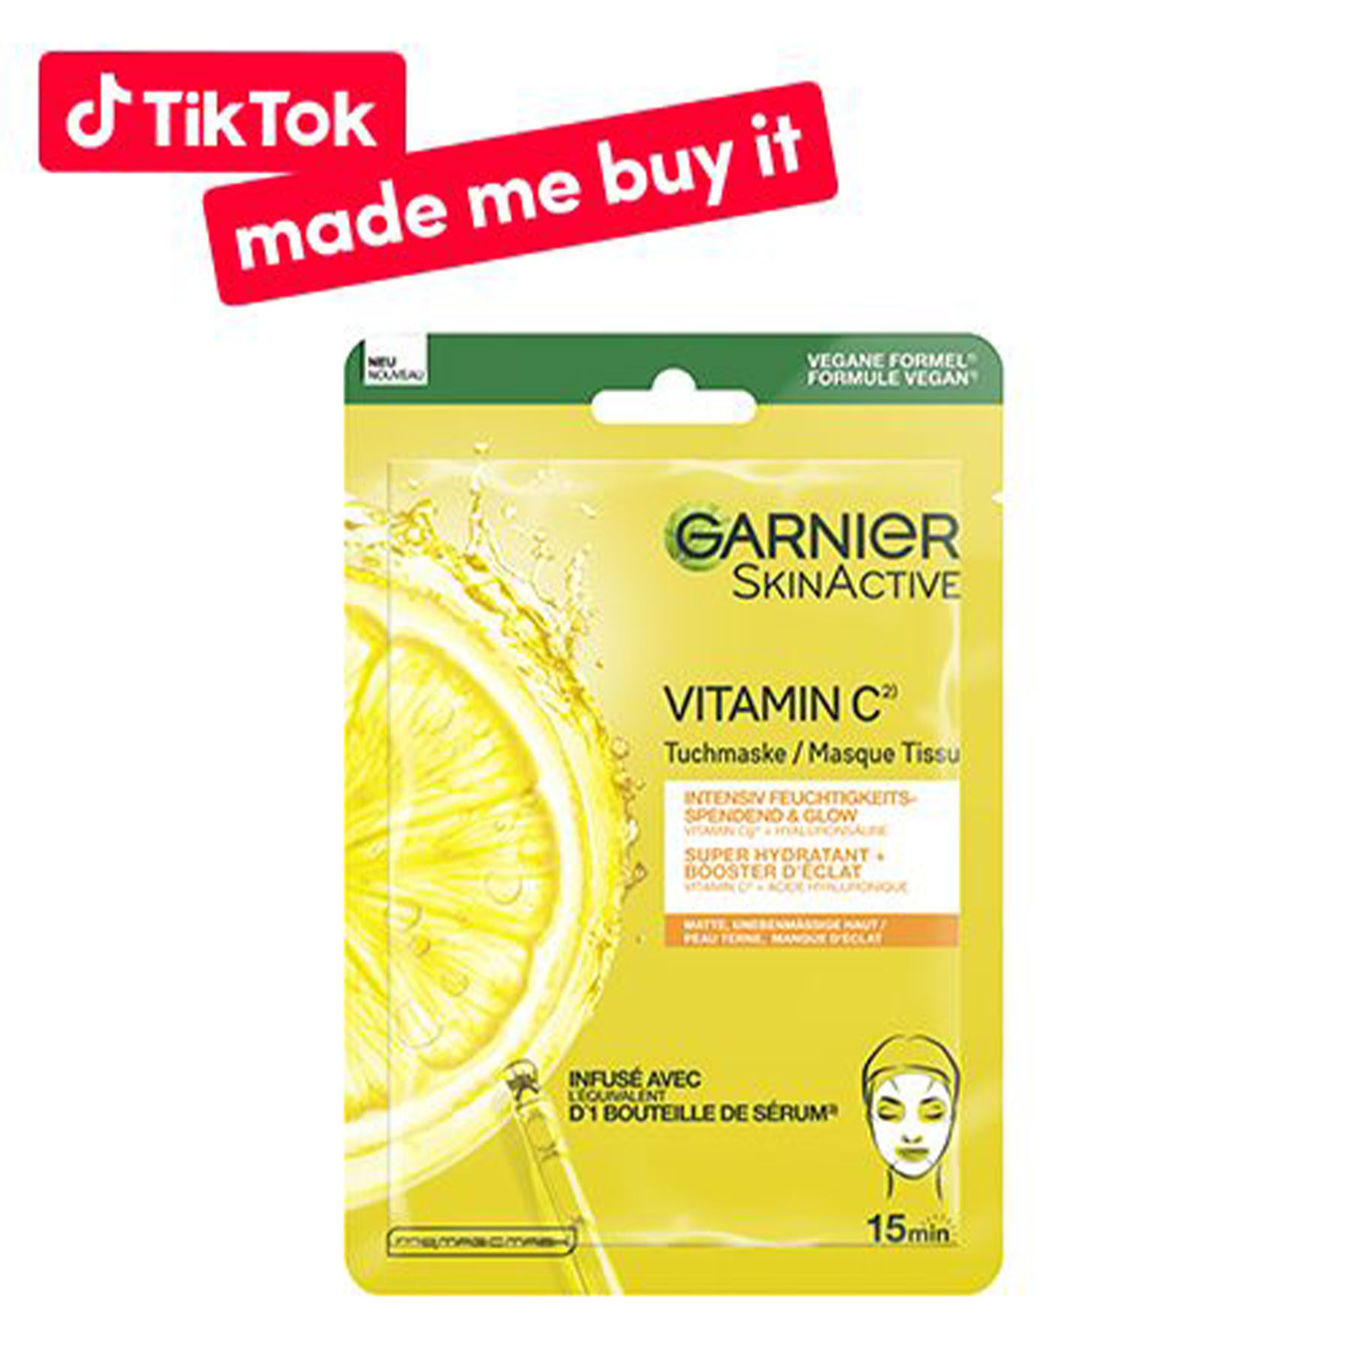 Garnier Vitamin C* feuchtigkeitsspendende & Glow Tuchmaske von Garnier